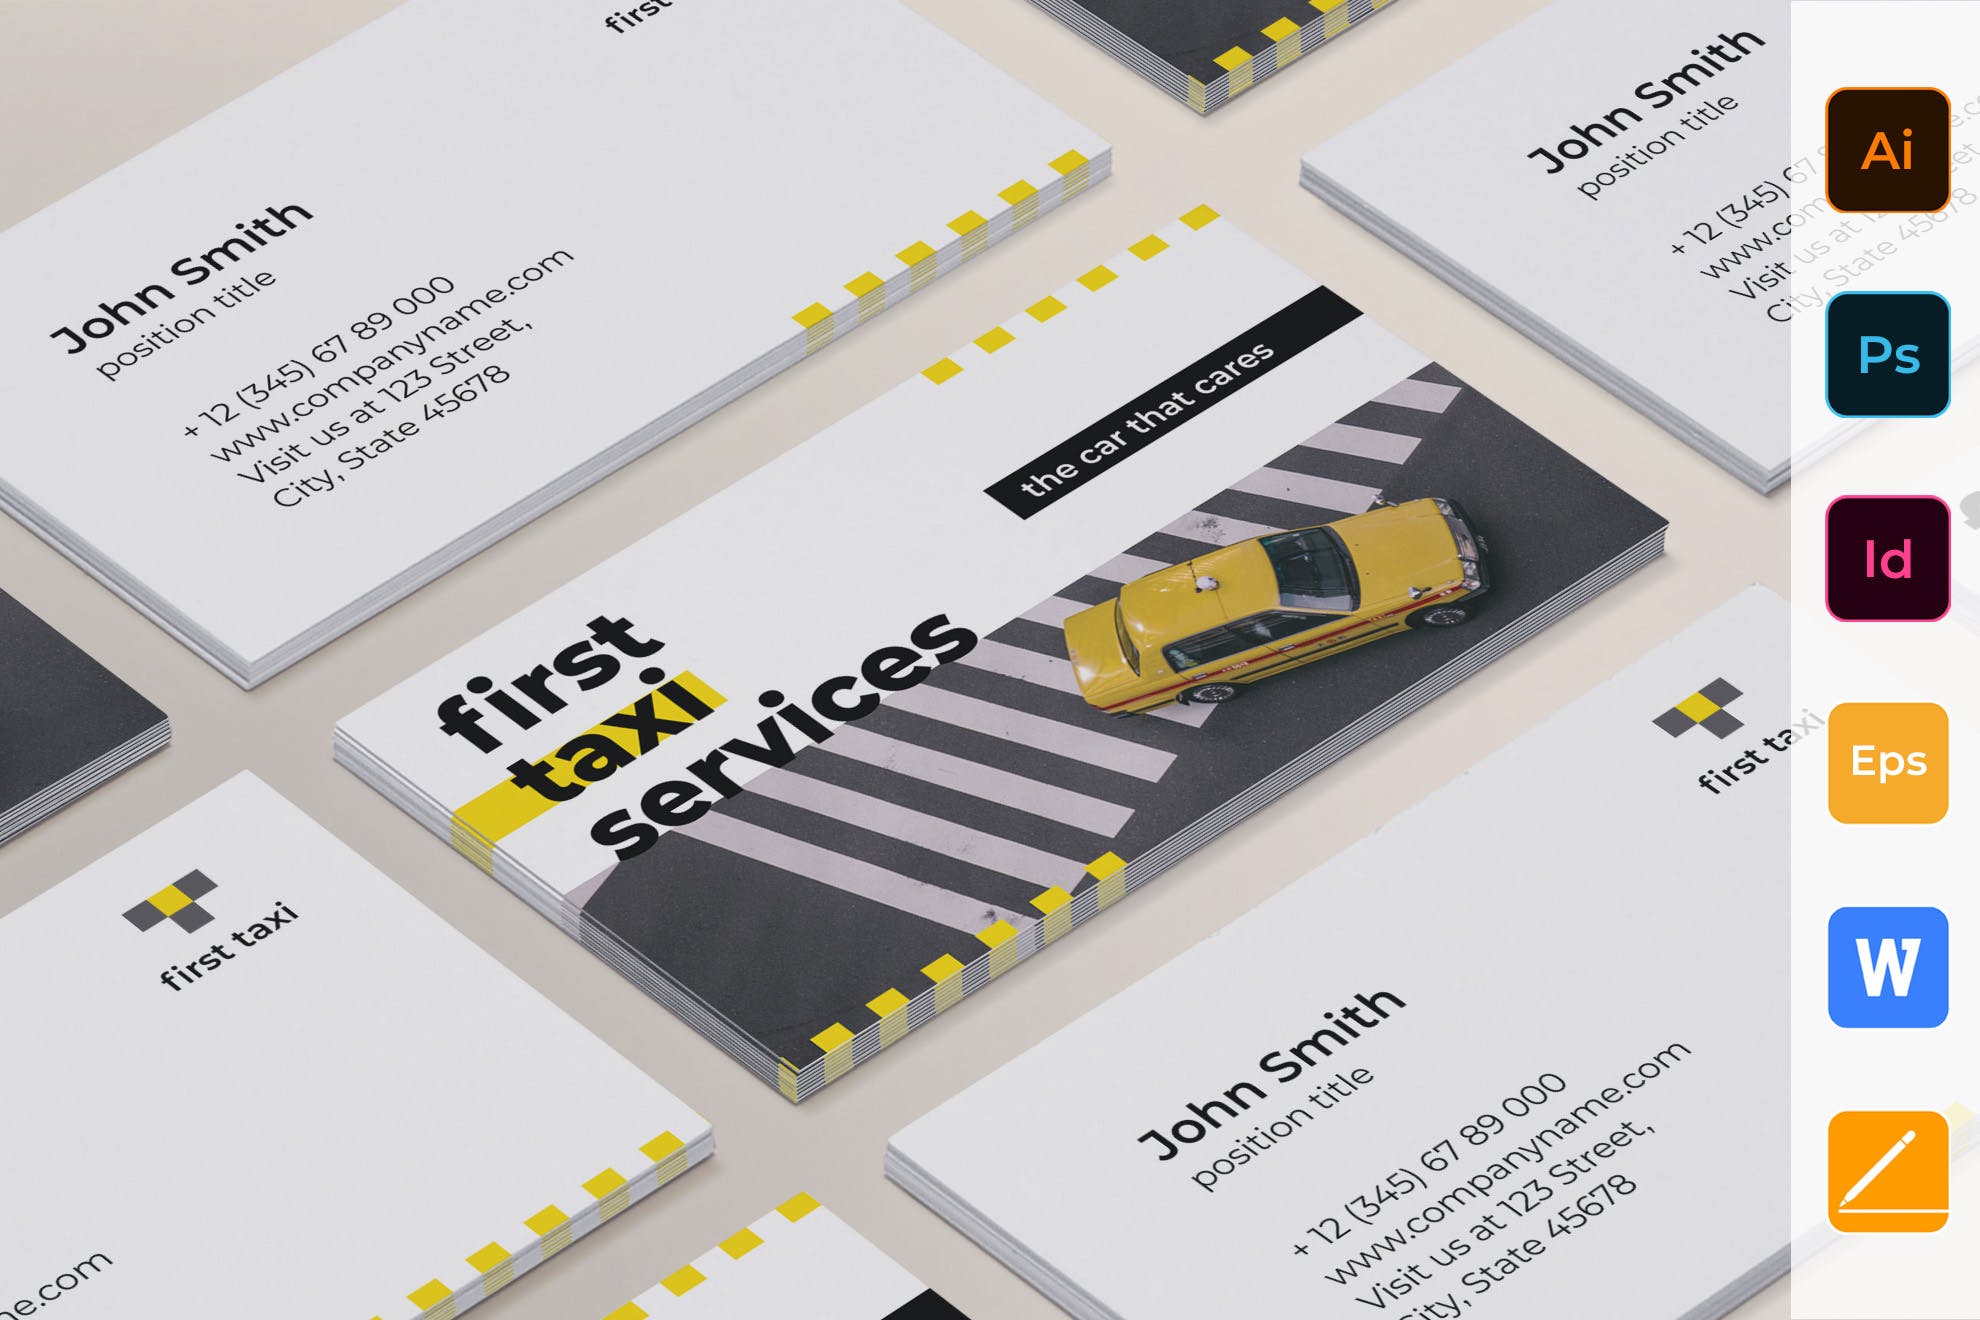 出租车/网约车服务企业司机名片设计模板 Taxi Services Business Card插图